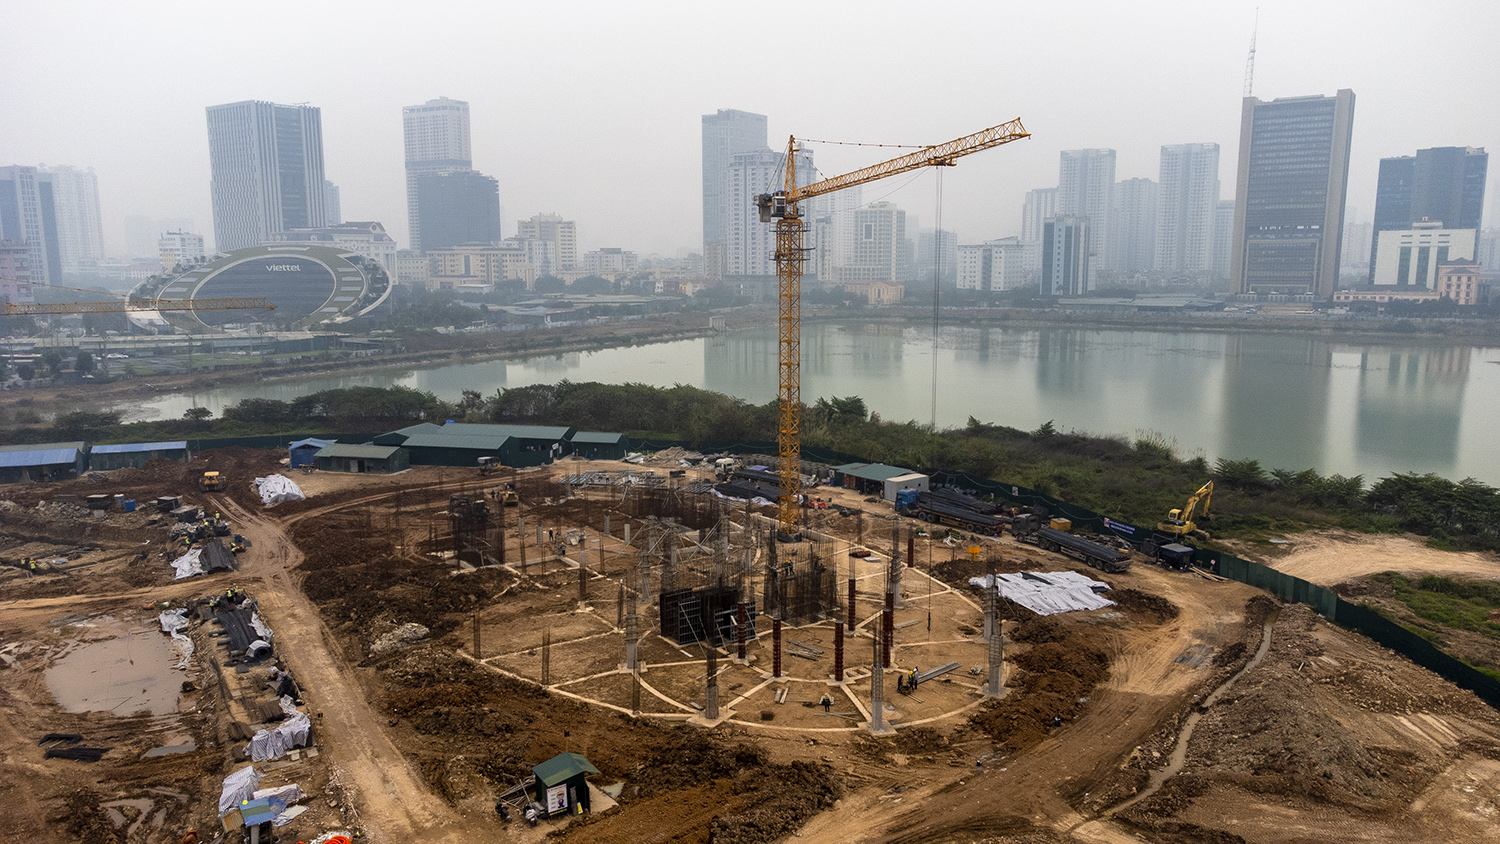 Dự án Xây dựng Cung thiếu nhi Hà Nội được khởi công từ tháng 11/2021 do Ban Quản lý dự án Đầu tư xây dựng công trình văn hóa - xã hội TP. Hà Nội làm chủ đầu tư với tổng mức đầu tư hơn 1.300 tỷ đồng.